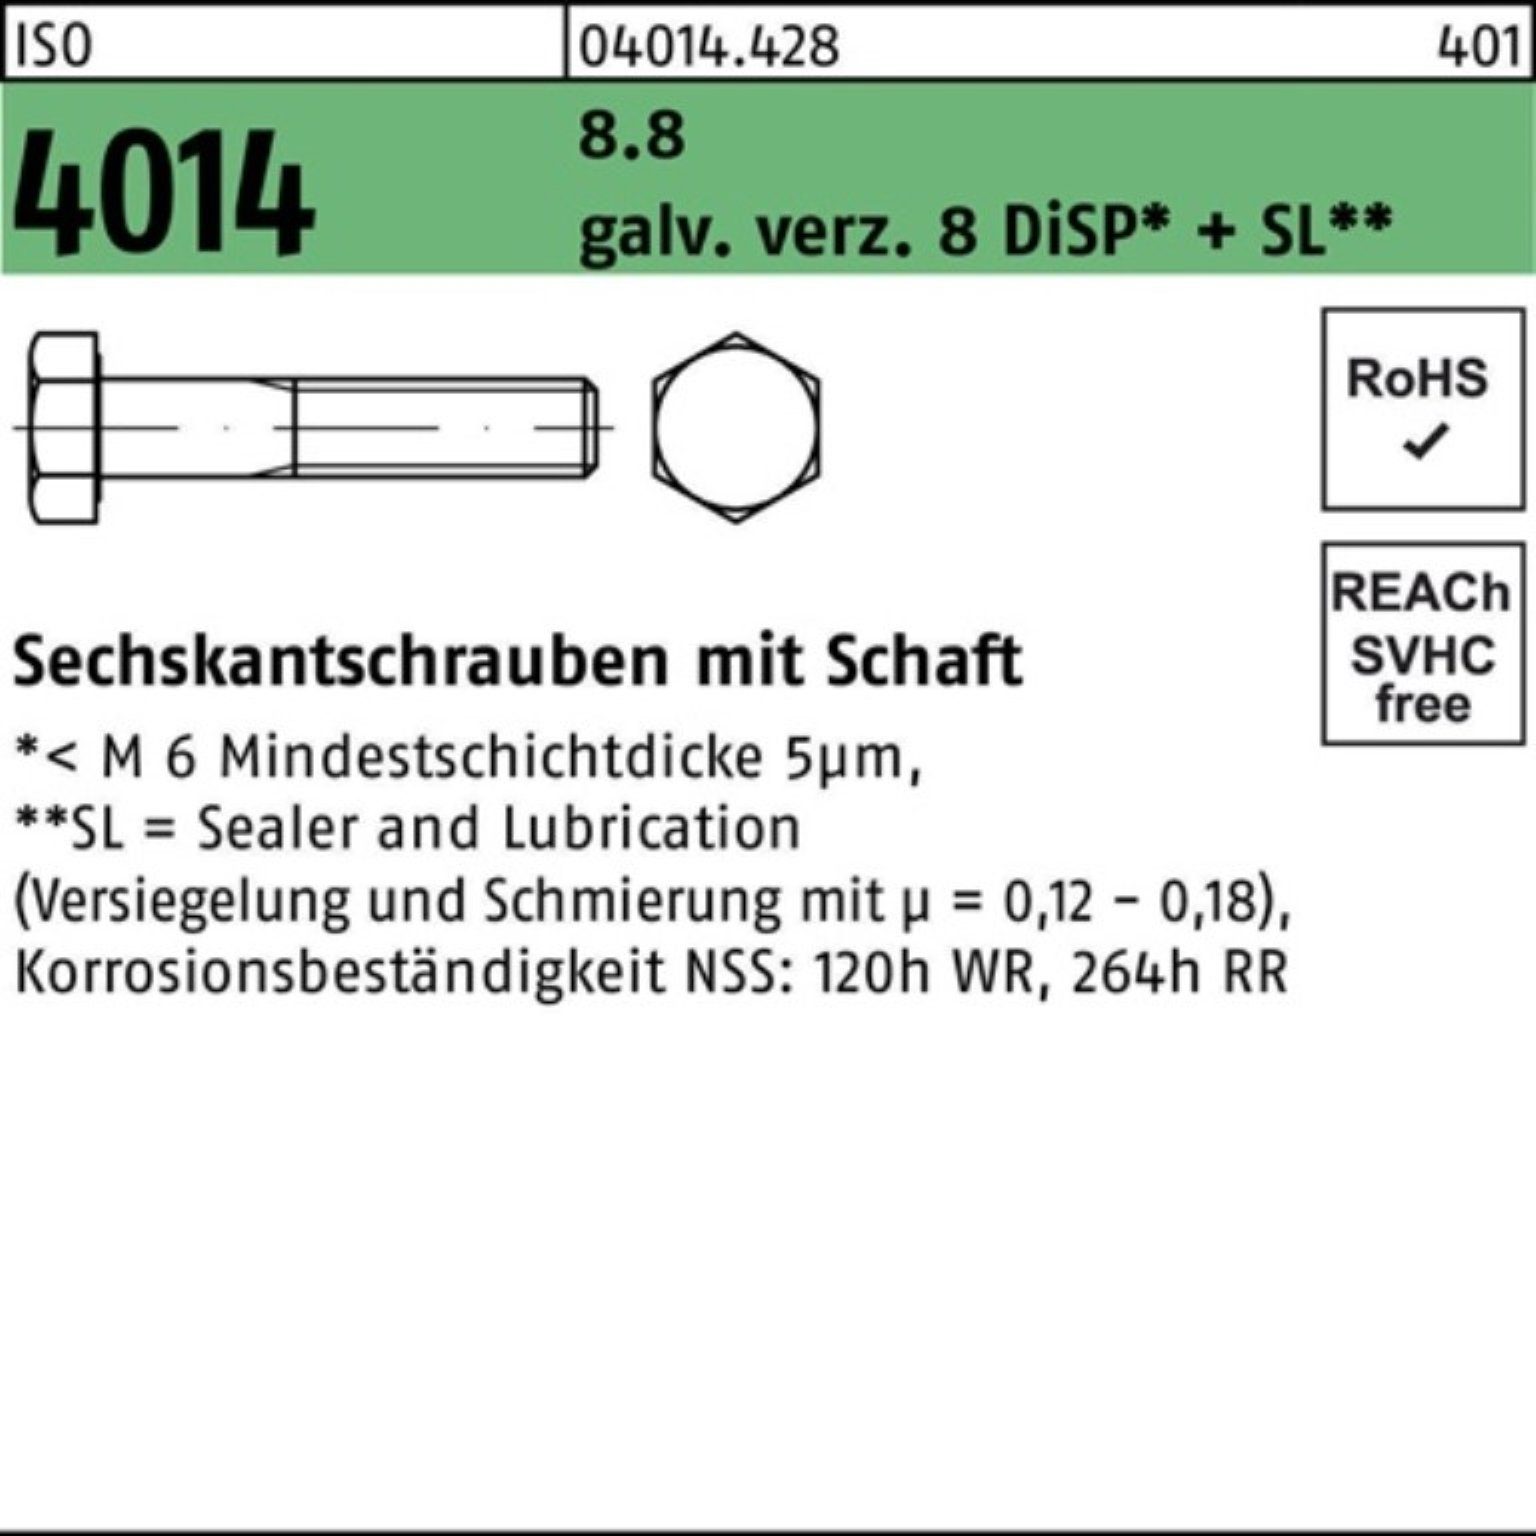 Bufab Sechskantschraube 100er Pack Sechskantschraube ISO 4014 galv.verz. M8x85 8.8 8 Schaft Di